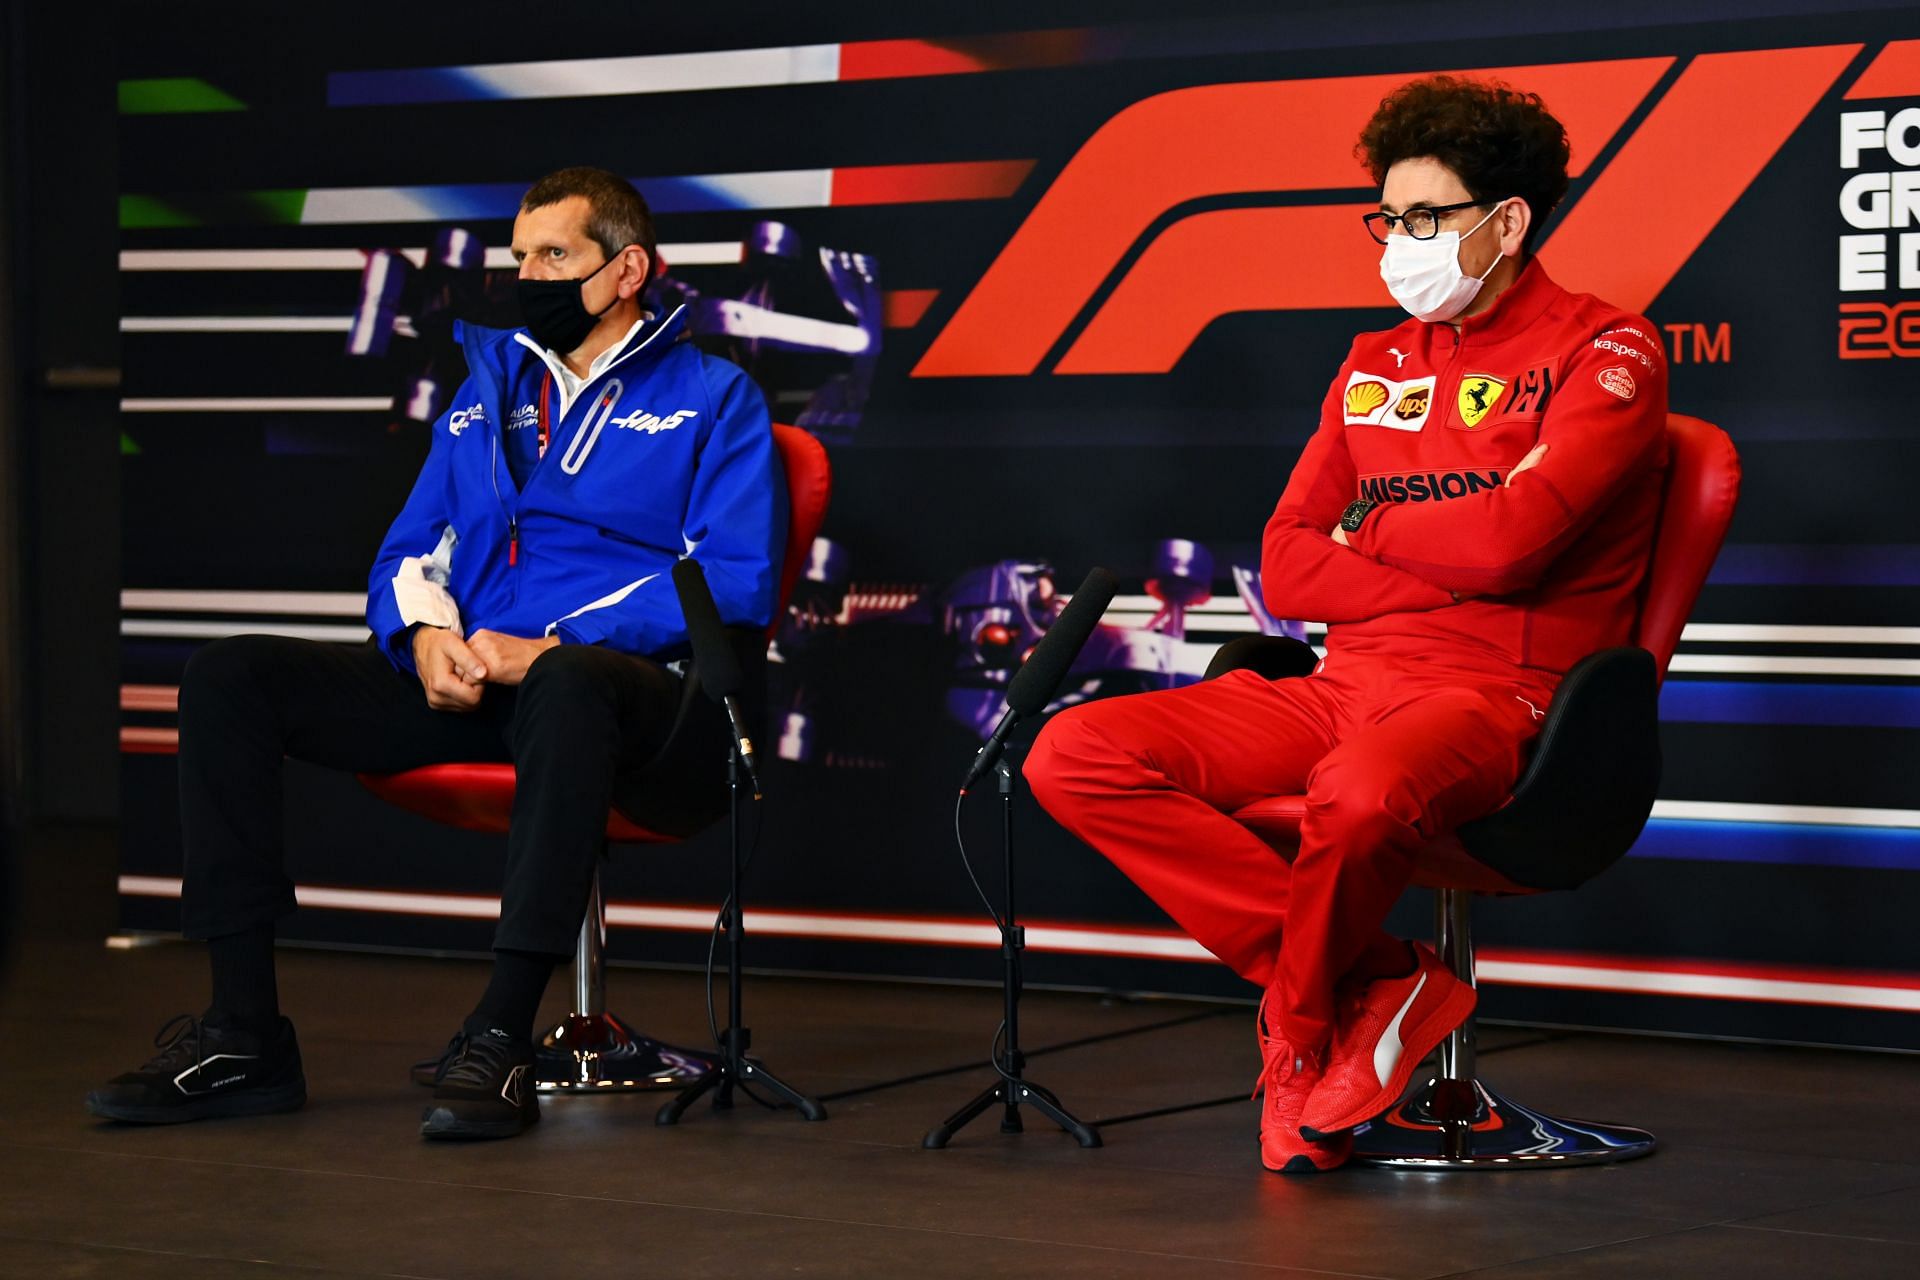 Haas team principal Gunther Steiner (l) and Ferrari team principal Mattia Binotto (r). (Photo by Clive Mason/Getty Images)